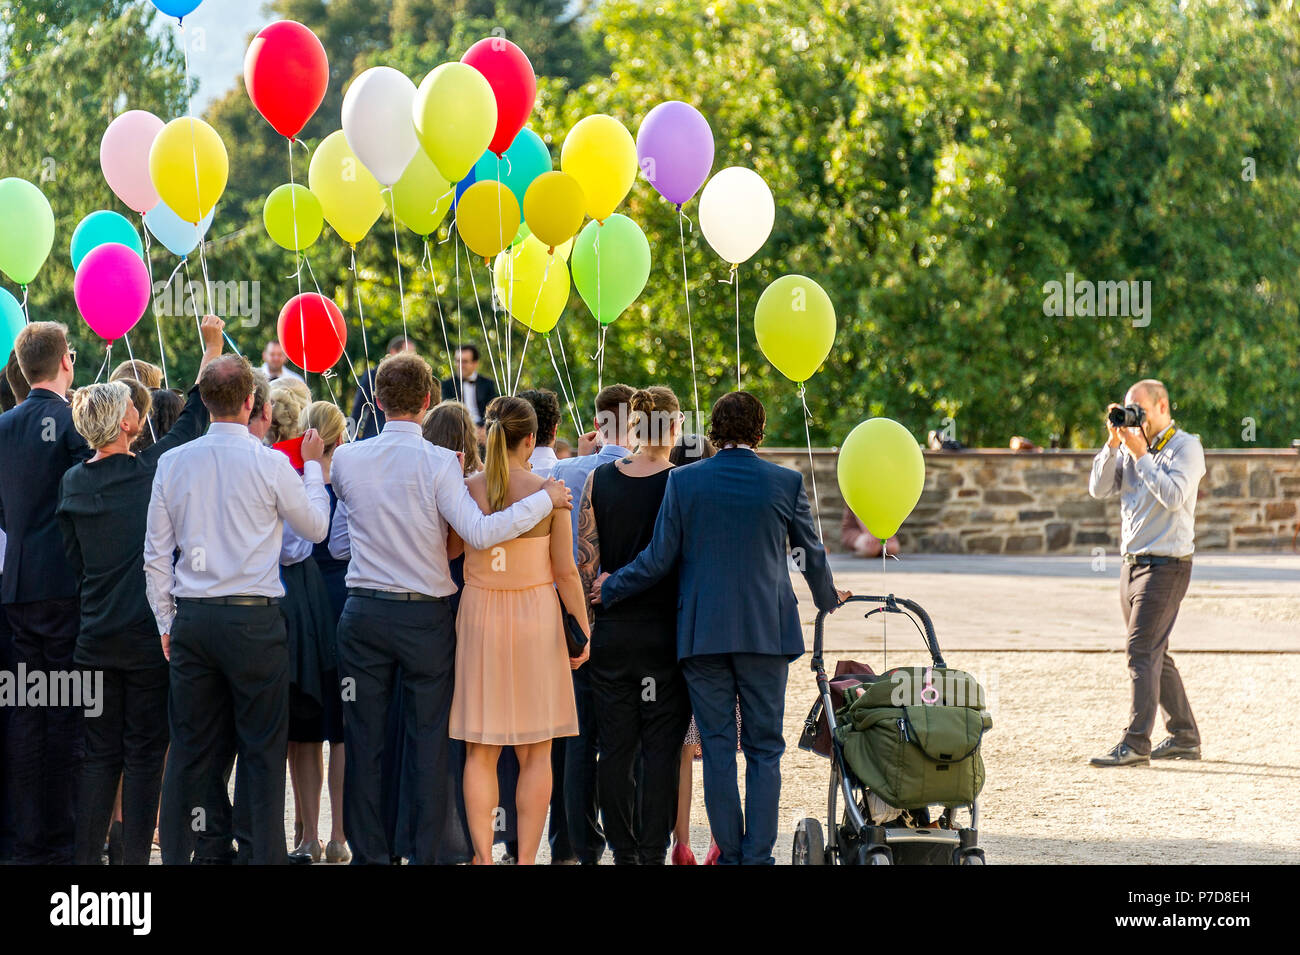 Photographe prend des photos d'un rassemblement festif avec des ballons colorés, Bad Homburg vor der Höhe, Hesse, Allemagne Banque D'Images